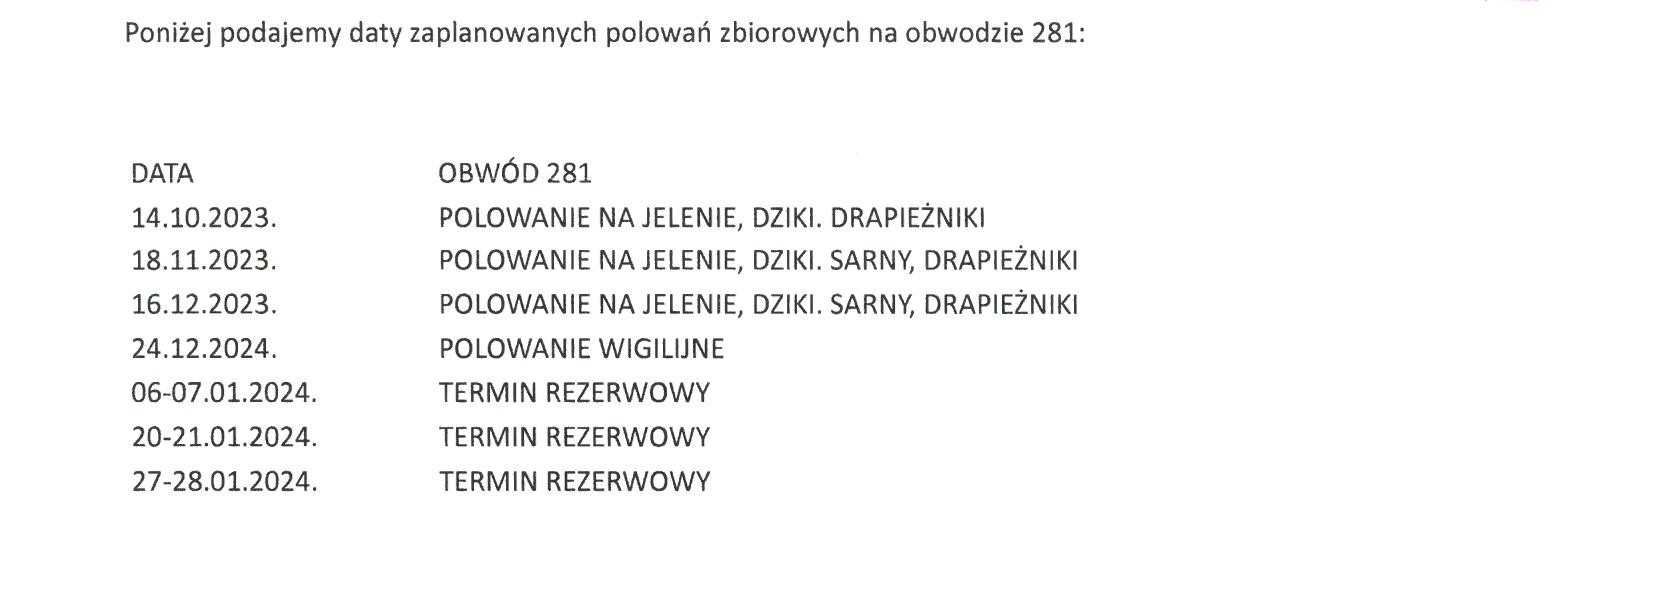 Kalendarz Polowań Zbiorowych Koła Łowieckie OSTOJA we Wrocławiu - Sezon Łowiecki 2023/2024 - Obwód 281